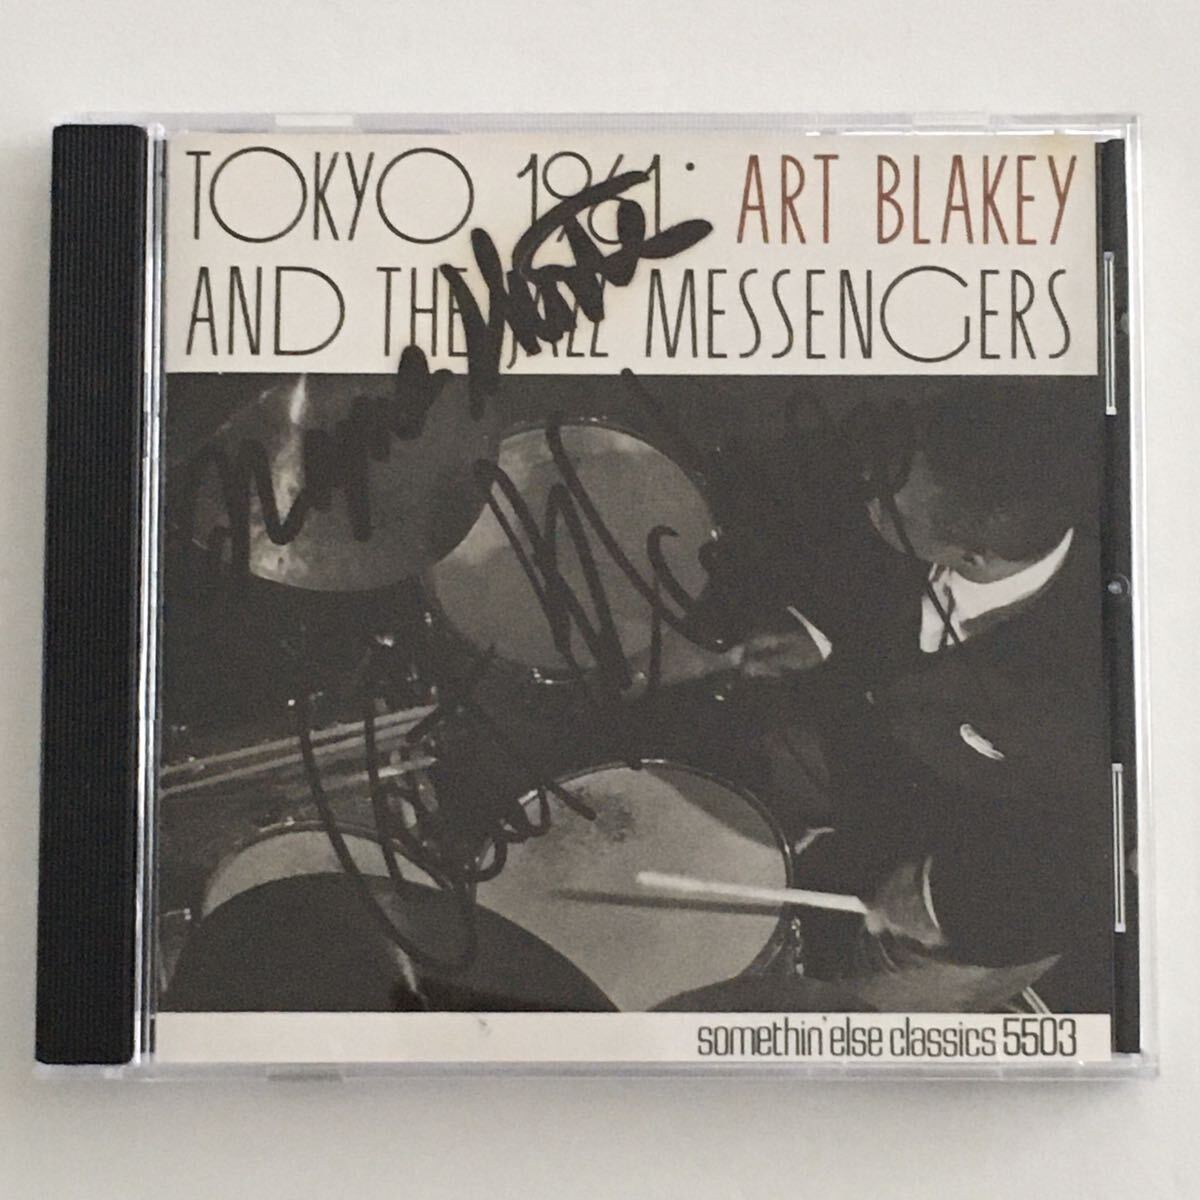 送料無料 評価1000達成記念 直筆サイン入りジャズCD Art Blakey & Jazz Messengers “Tokyo 1961” 1CD Somethin’else 日本盤_画像1